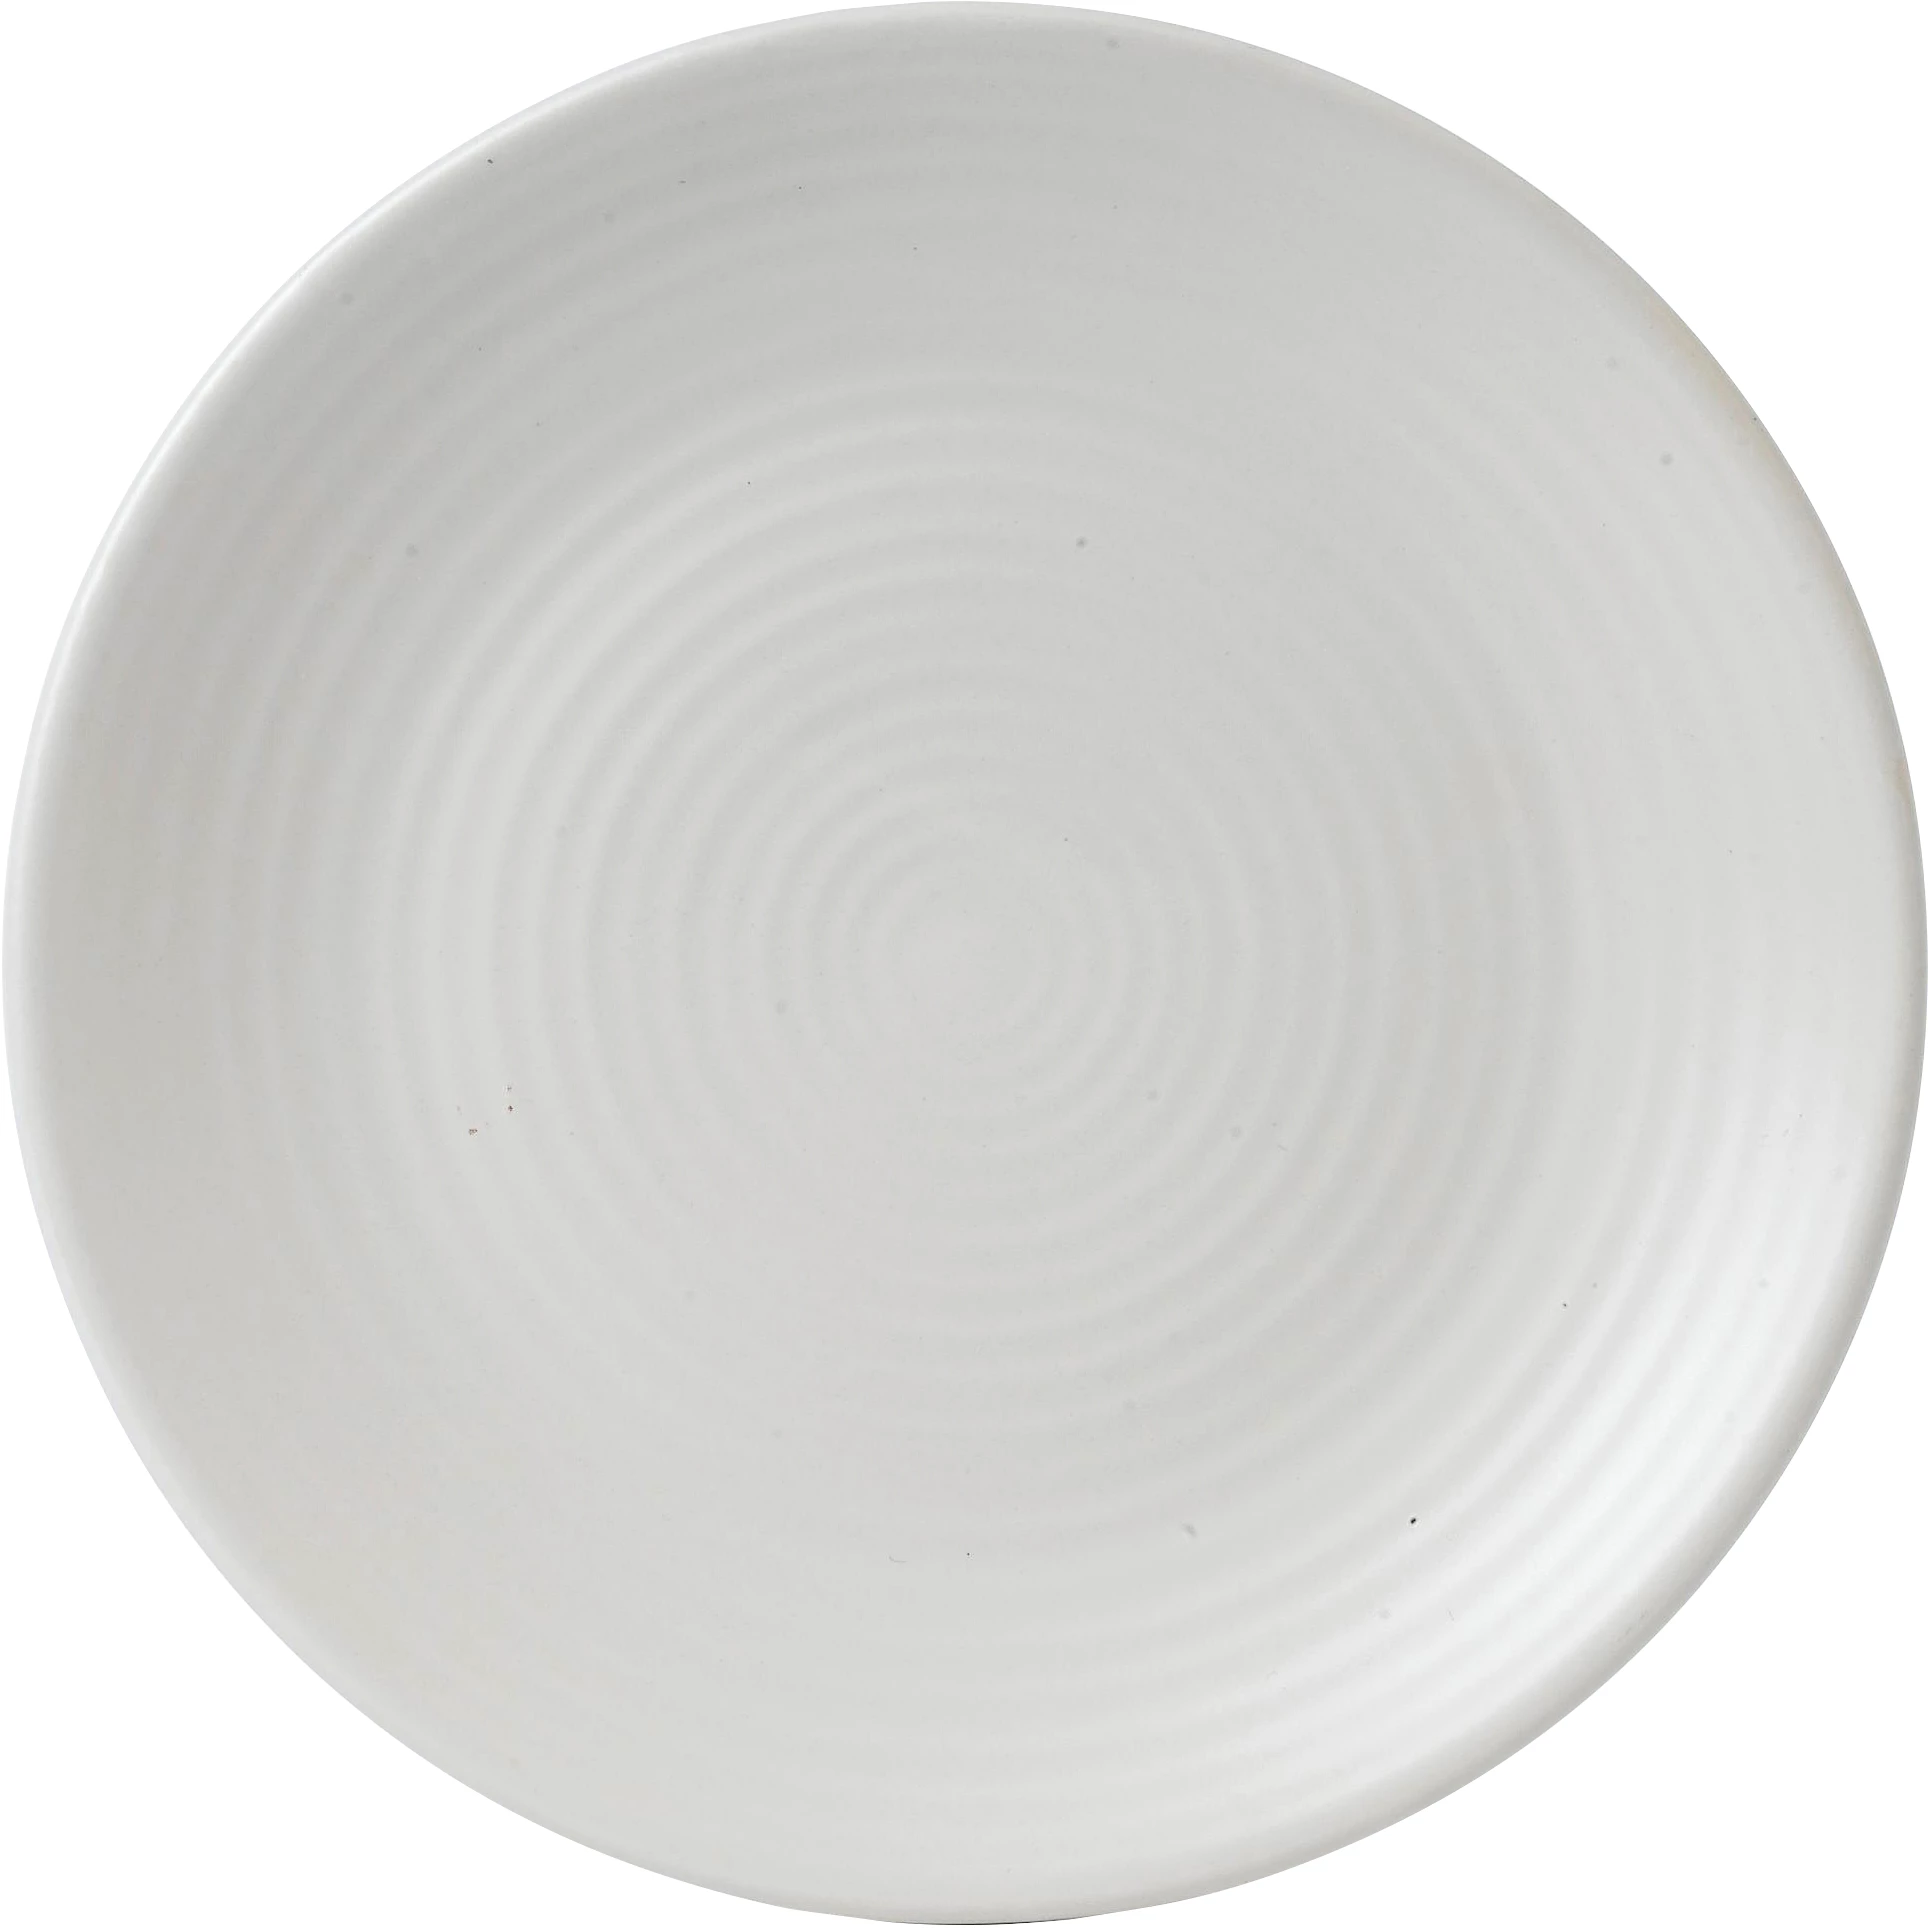 Dudson Evo Pearl flad tallerken, hvid, ø22,9 cm